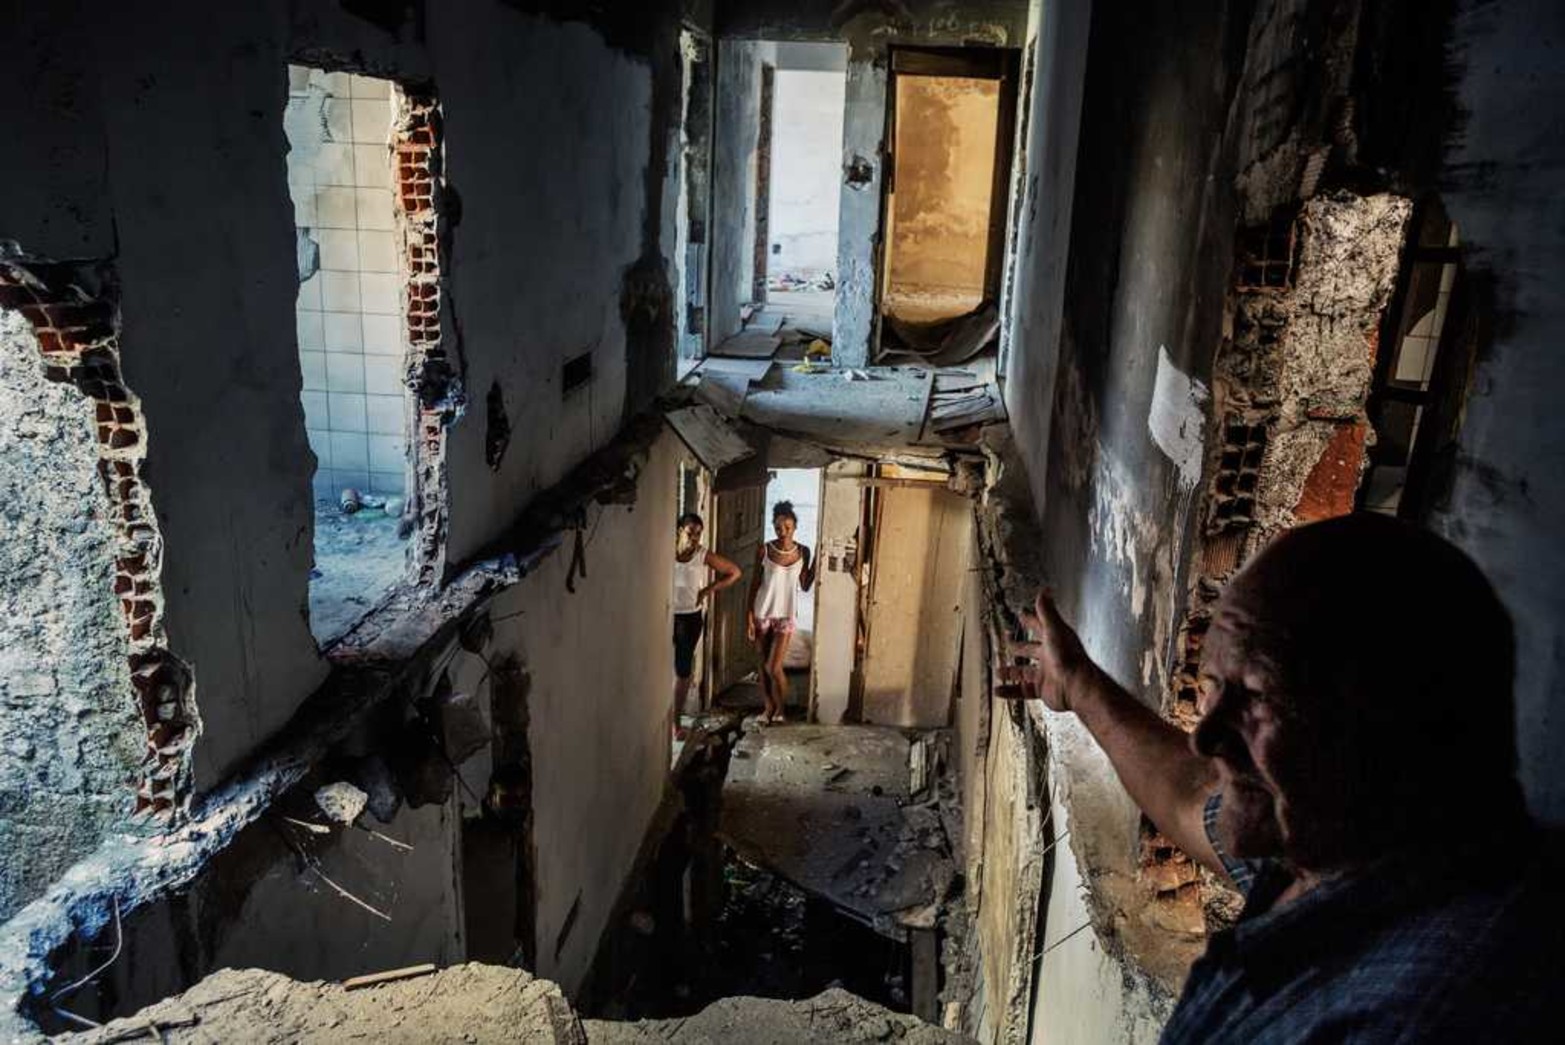 Un pastor que vive en un edificio ocupado de Rio de Janeiro, Brasil, explica el 19/07/2015 los problemas que tiene el sitio. La foto de Peter Bauza fue premiada por la fundación World Press Photo.